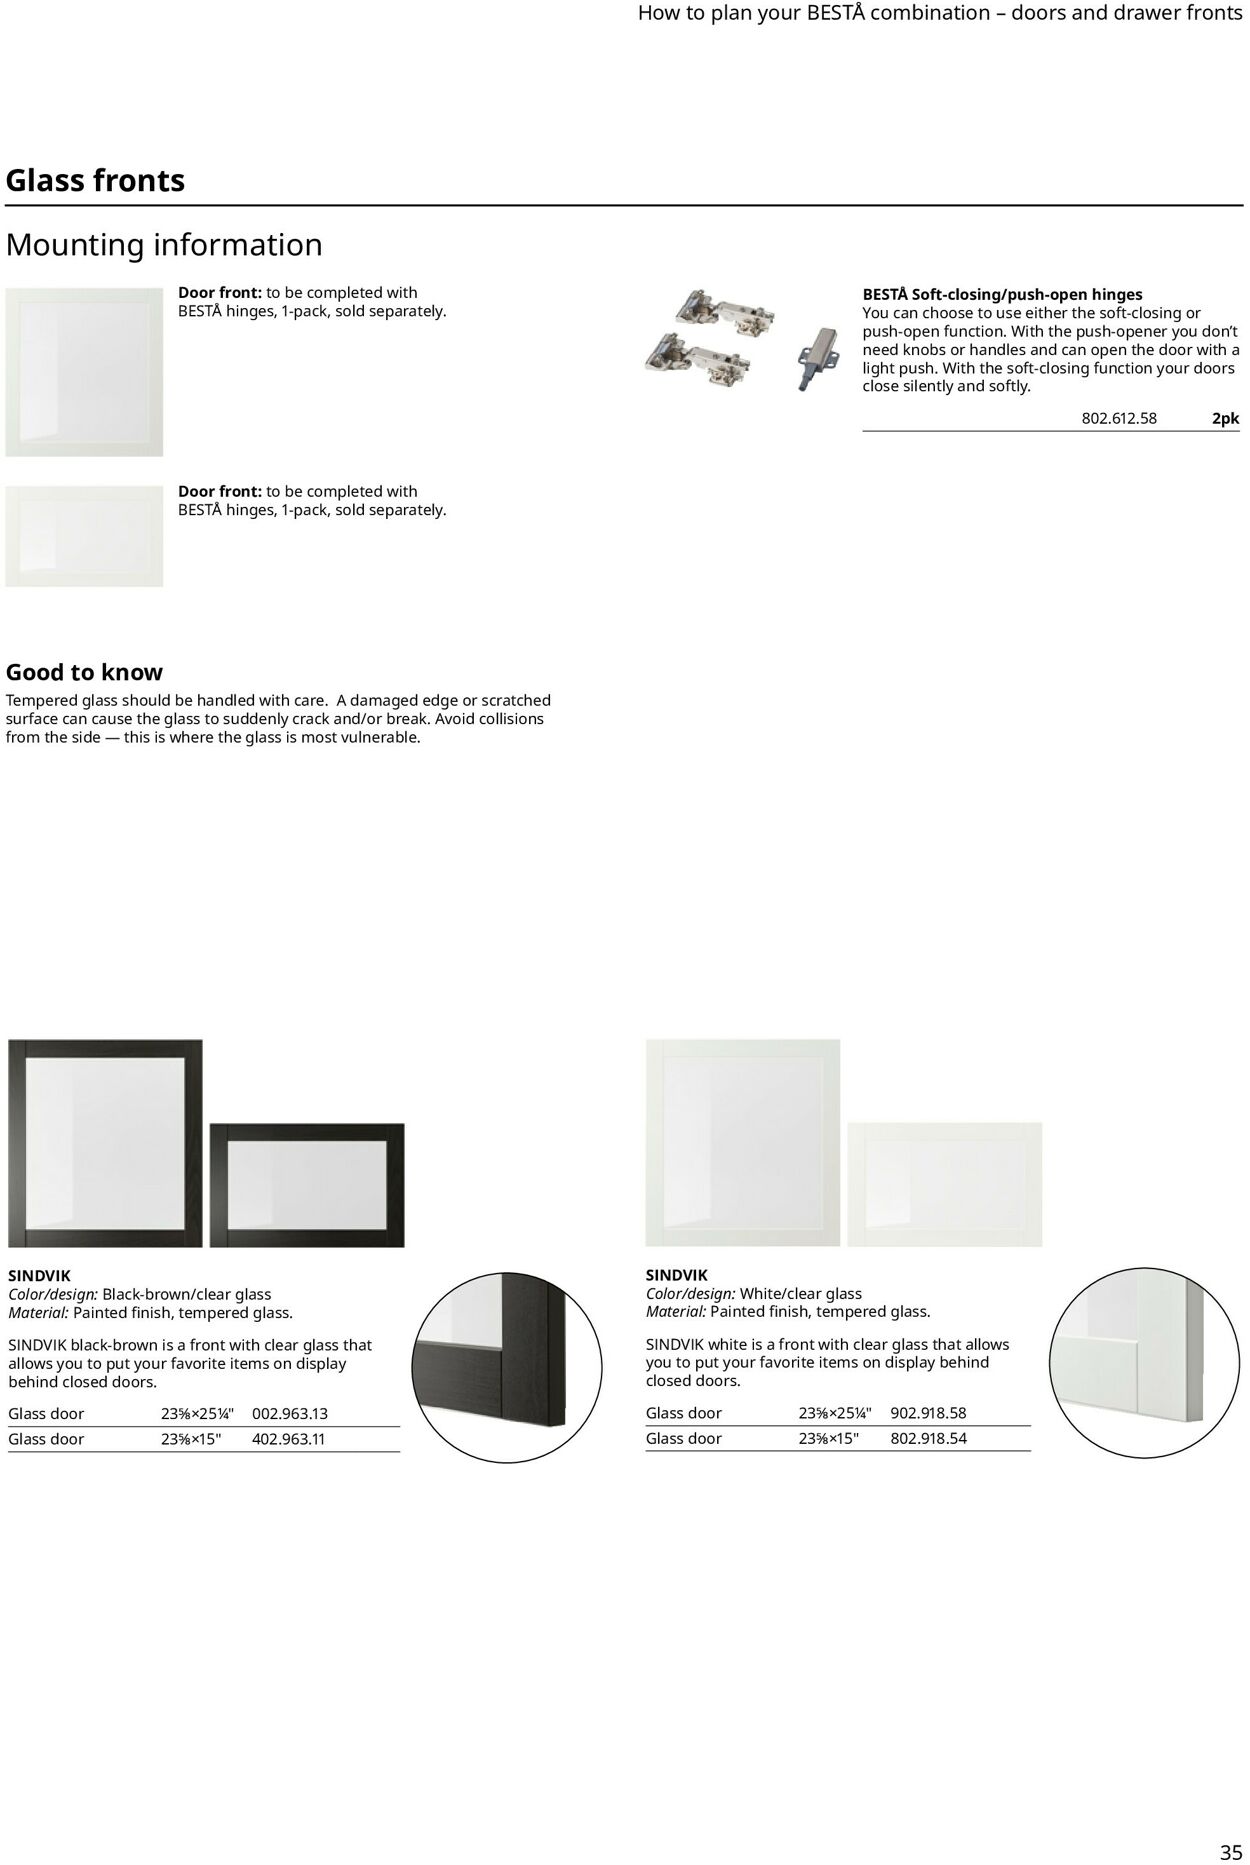 Catalogue IKEA from 11/11/2022